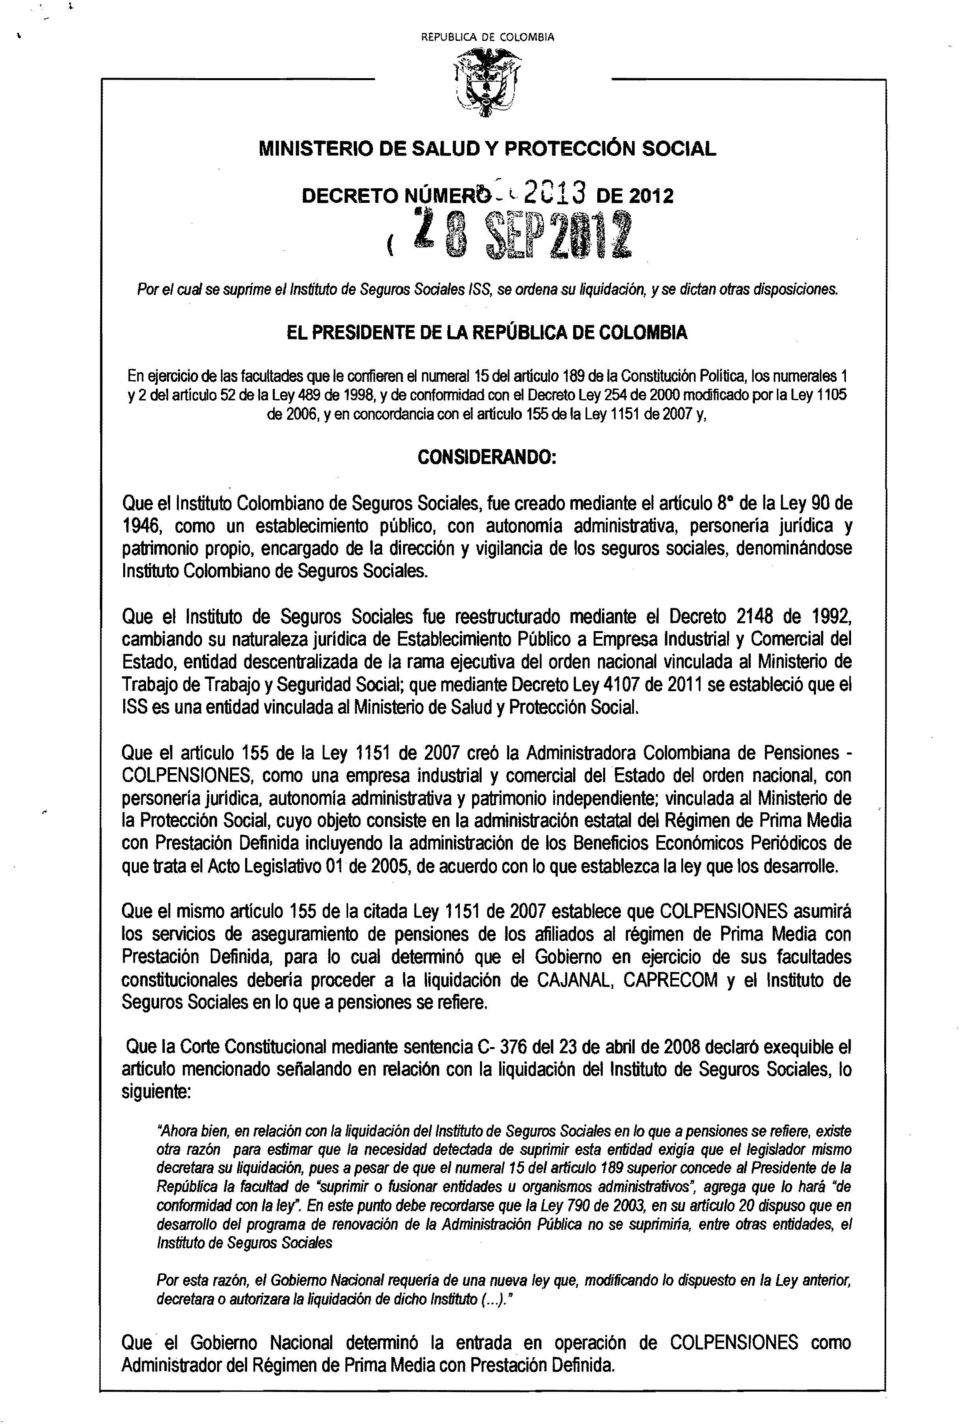 EL PRESIDENTE DE LA REPÚBLICA DE COLOMBIA En ejercicio de las facultades que le confieren el numeral 15 del artículo 189 de la Constitución Política, los numerales 1 y 2 del artículo 52 de la Ley 489